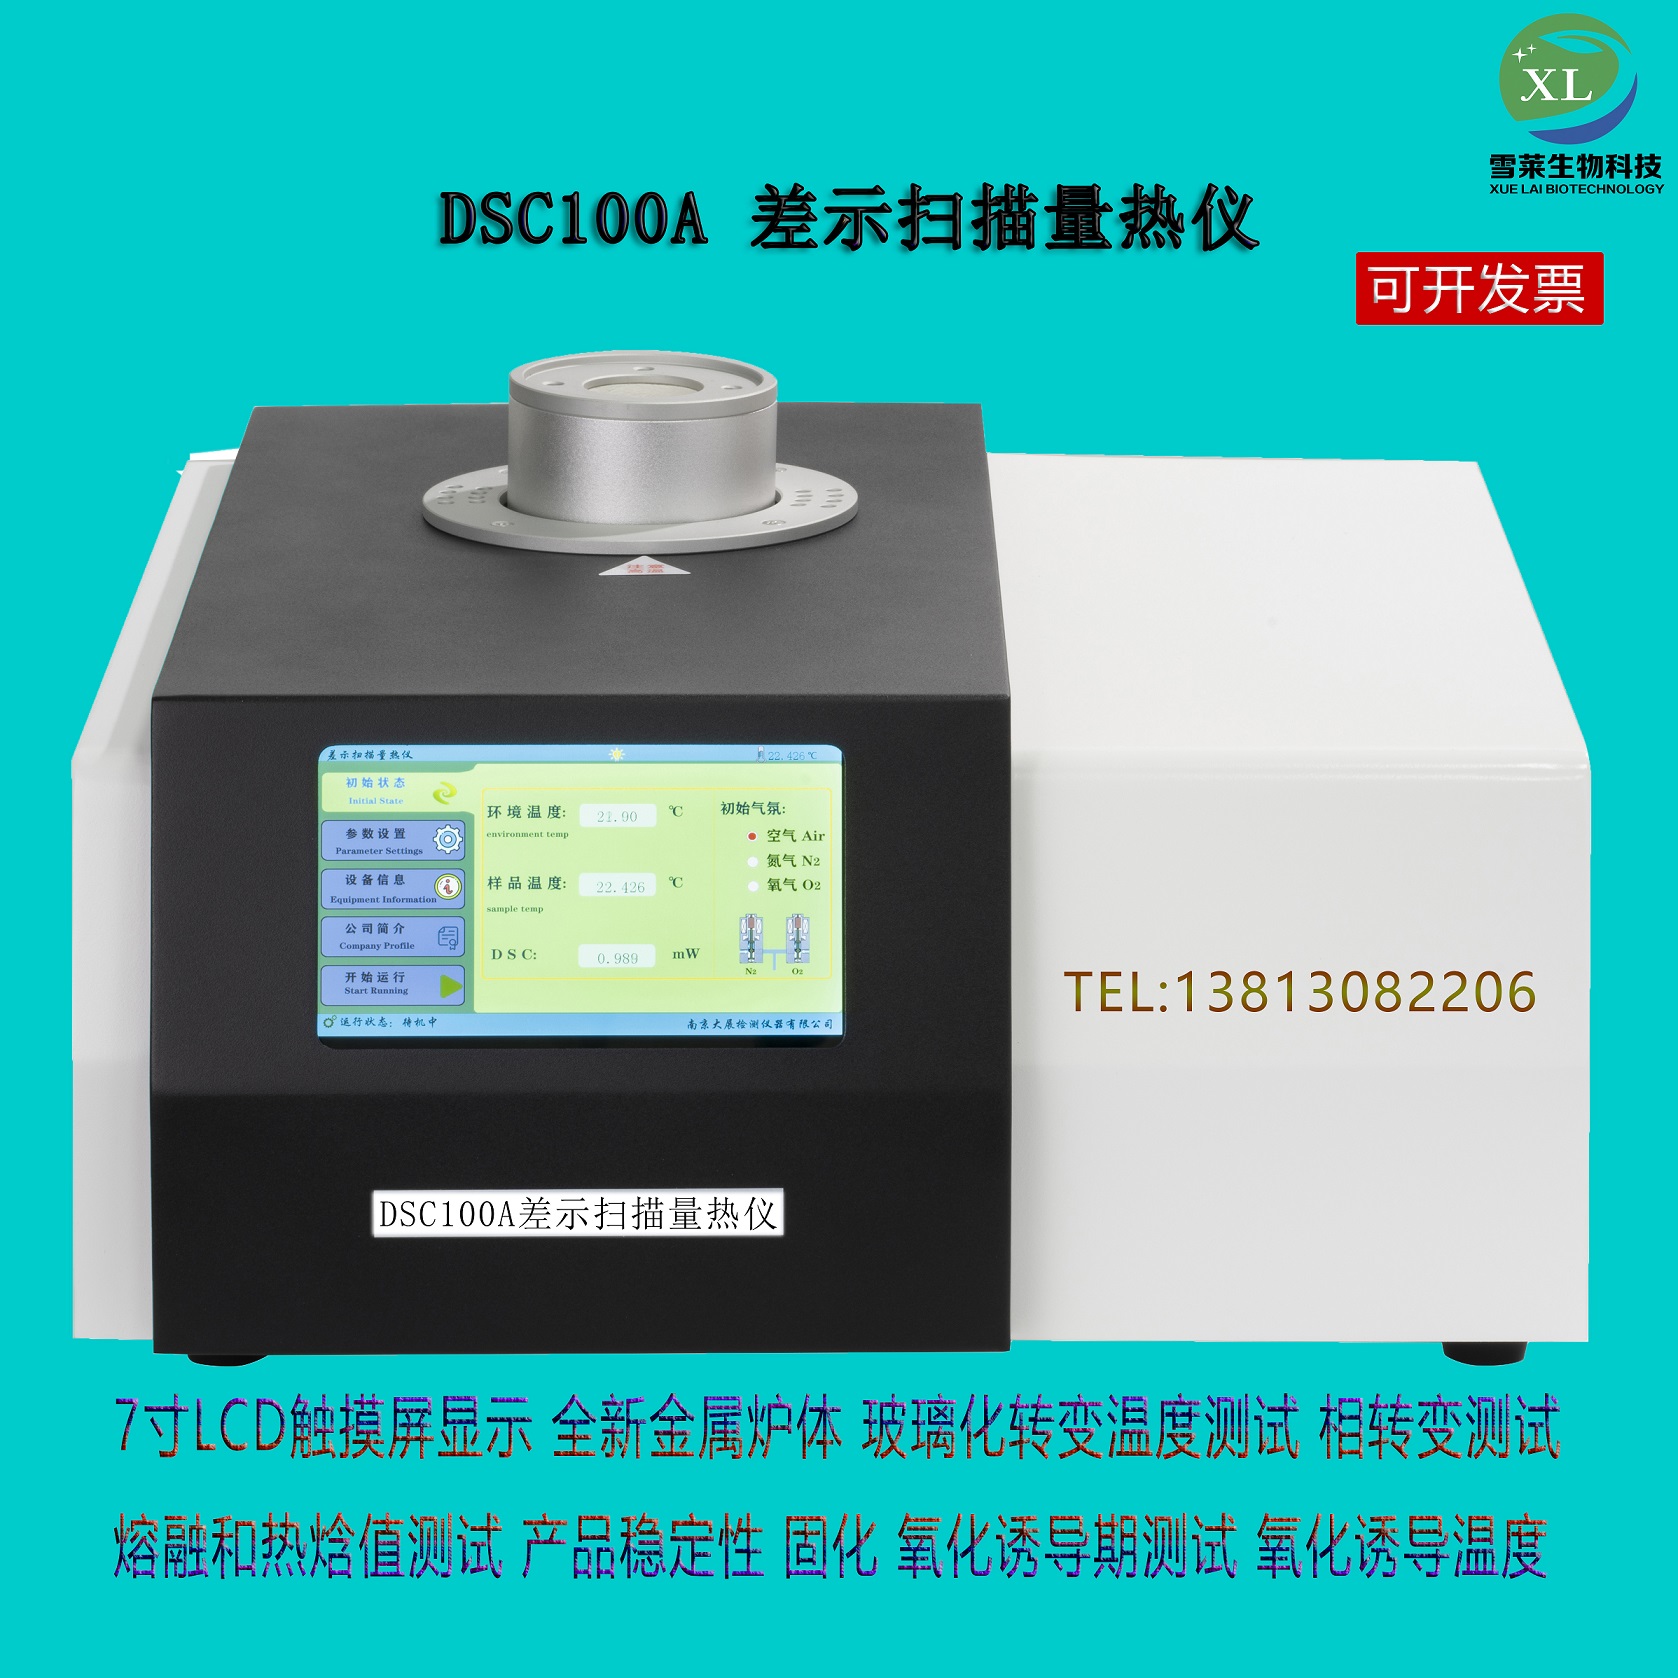 差示扫描量热仪DSC-100A南京雪莱生物科技有限公司